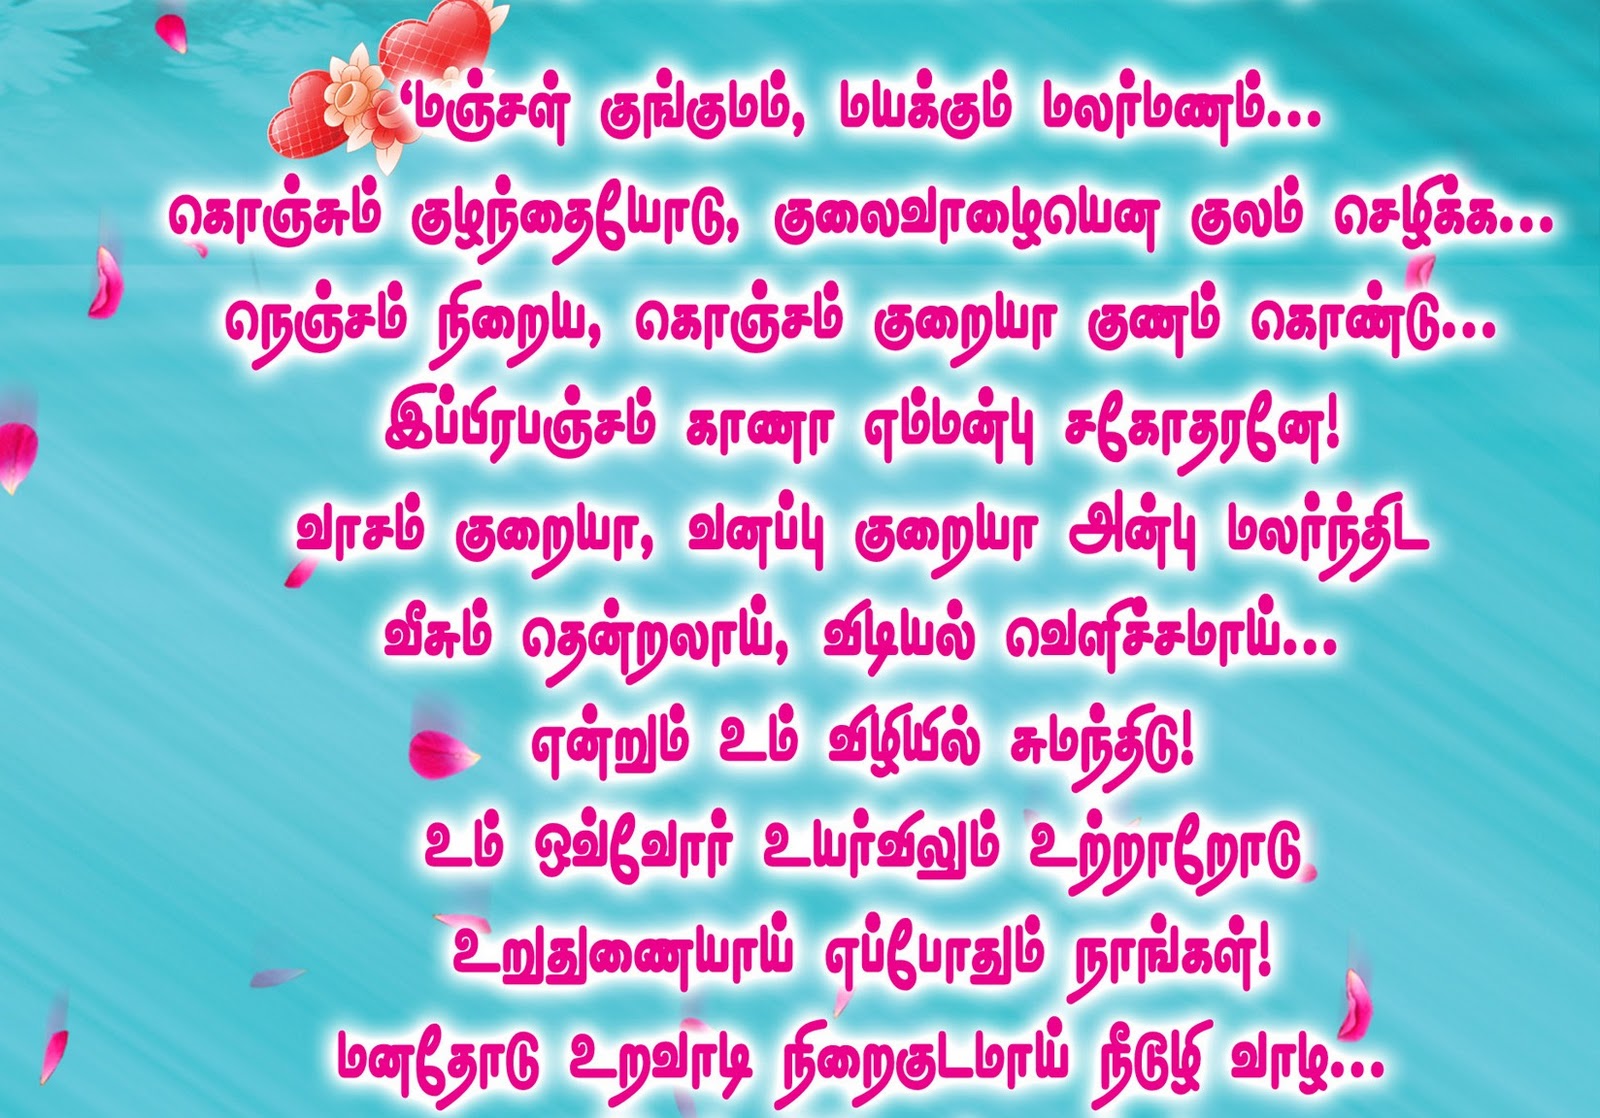 Tamil Quotes In Marriage Quotesgram